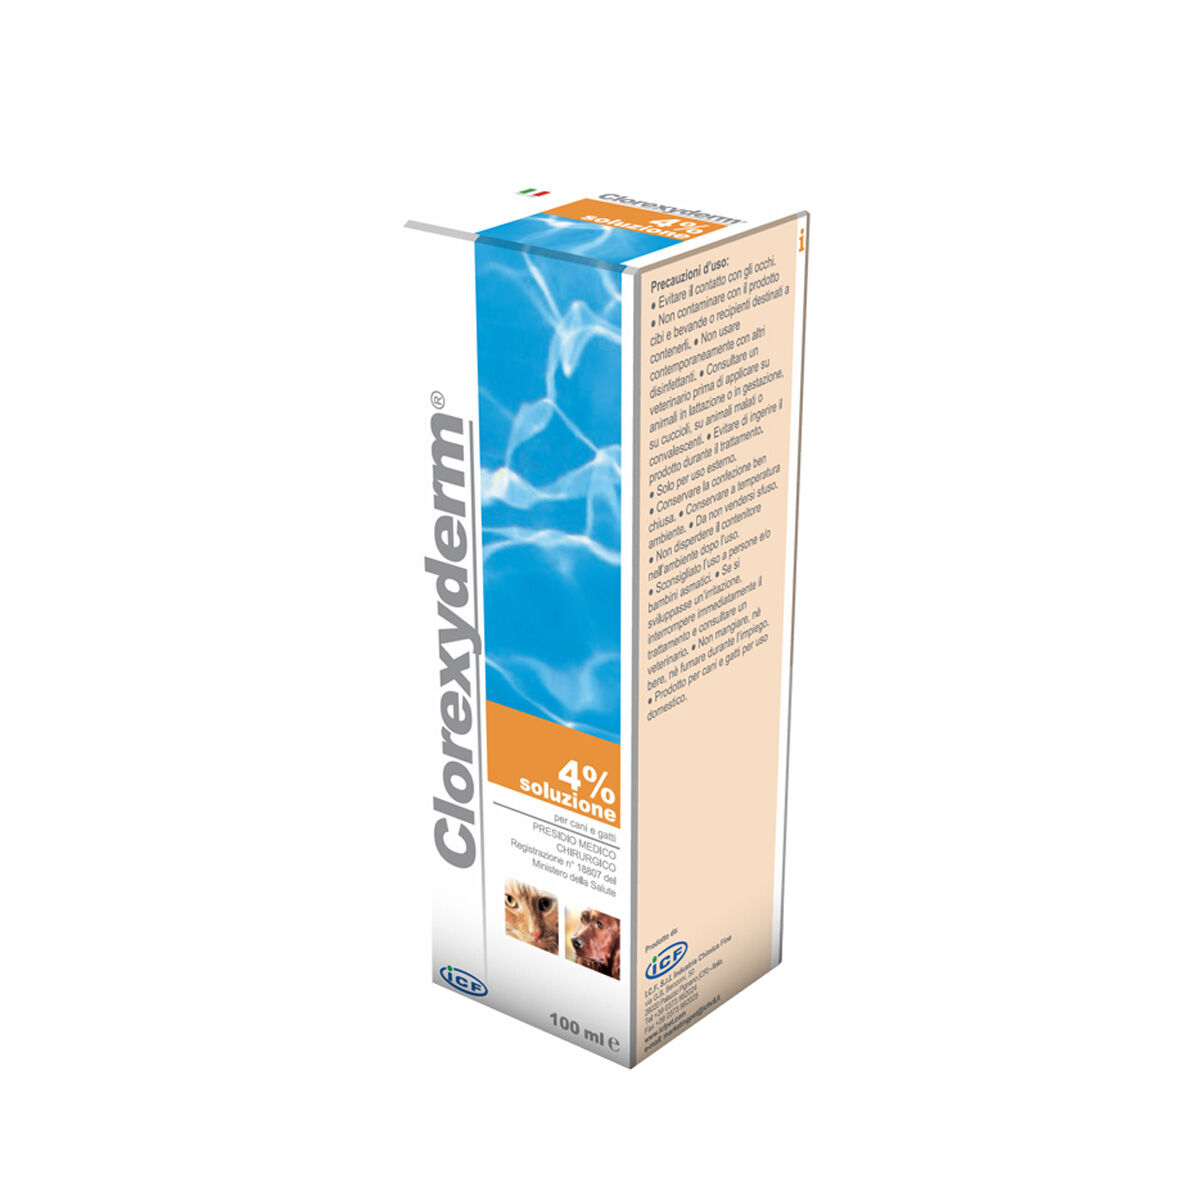 Clorexyderm Soluzione 4% Clorexidina Schiuma Detergente Disinfettante Cani E Gatti 100ml